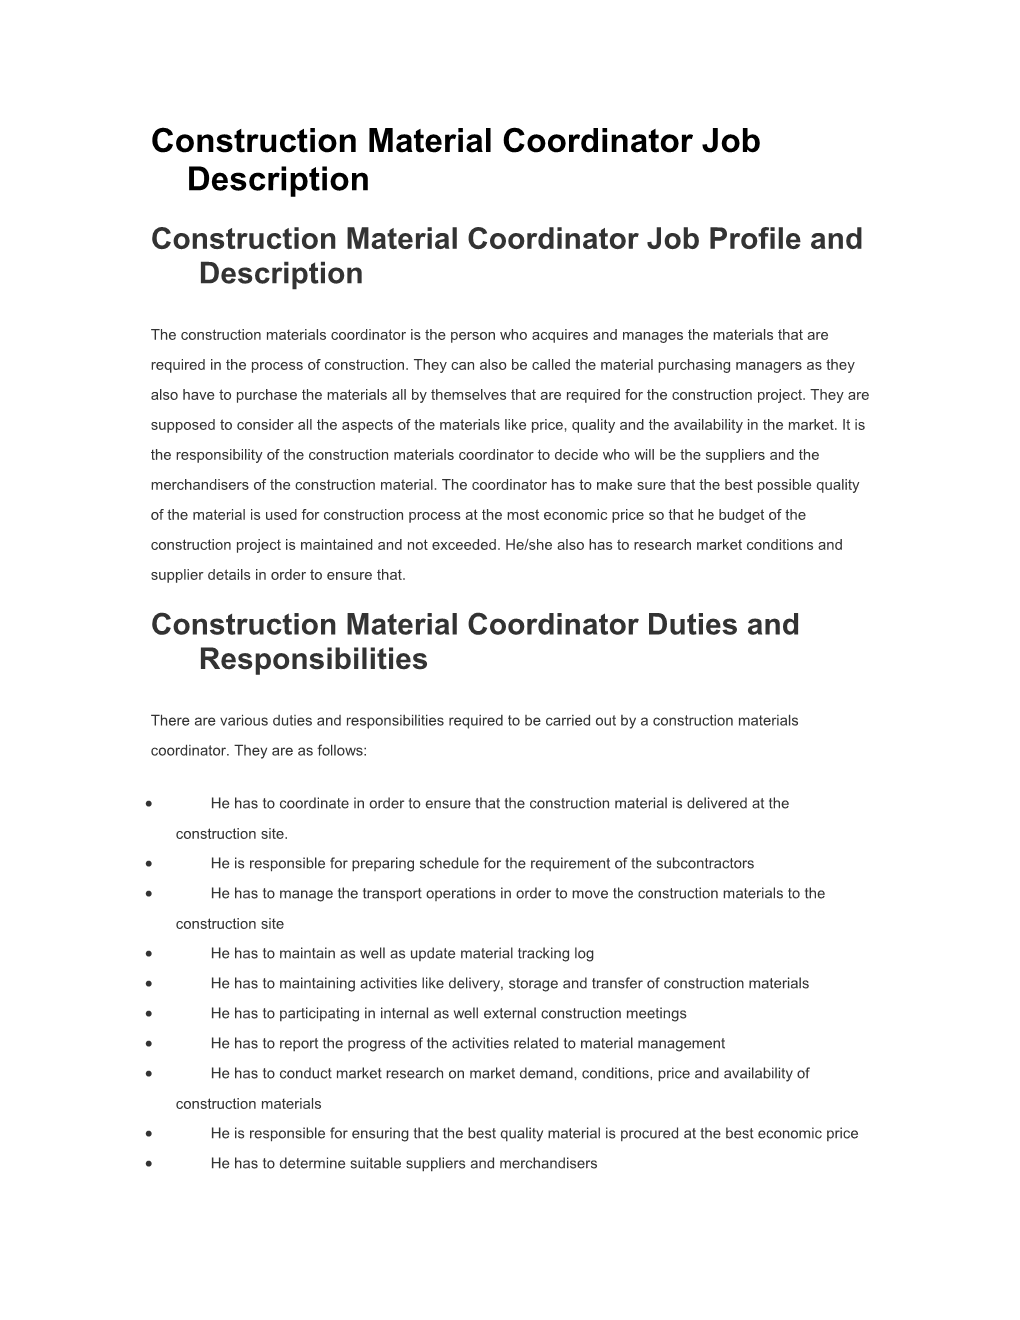 Construction Material Coordinator Job Description